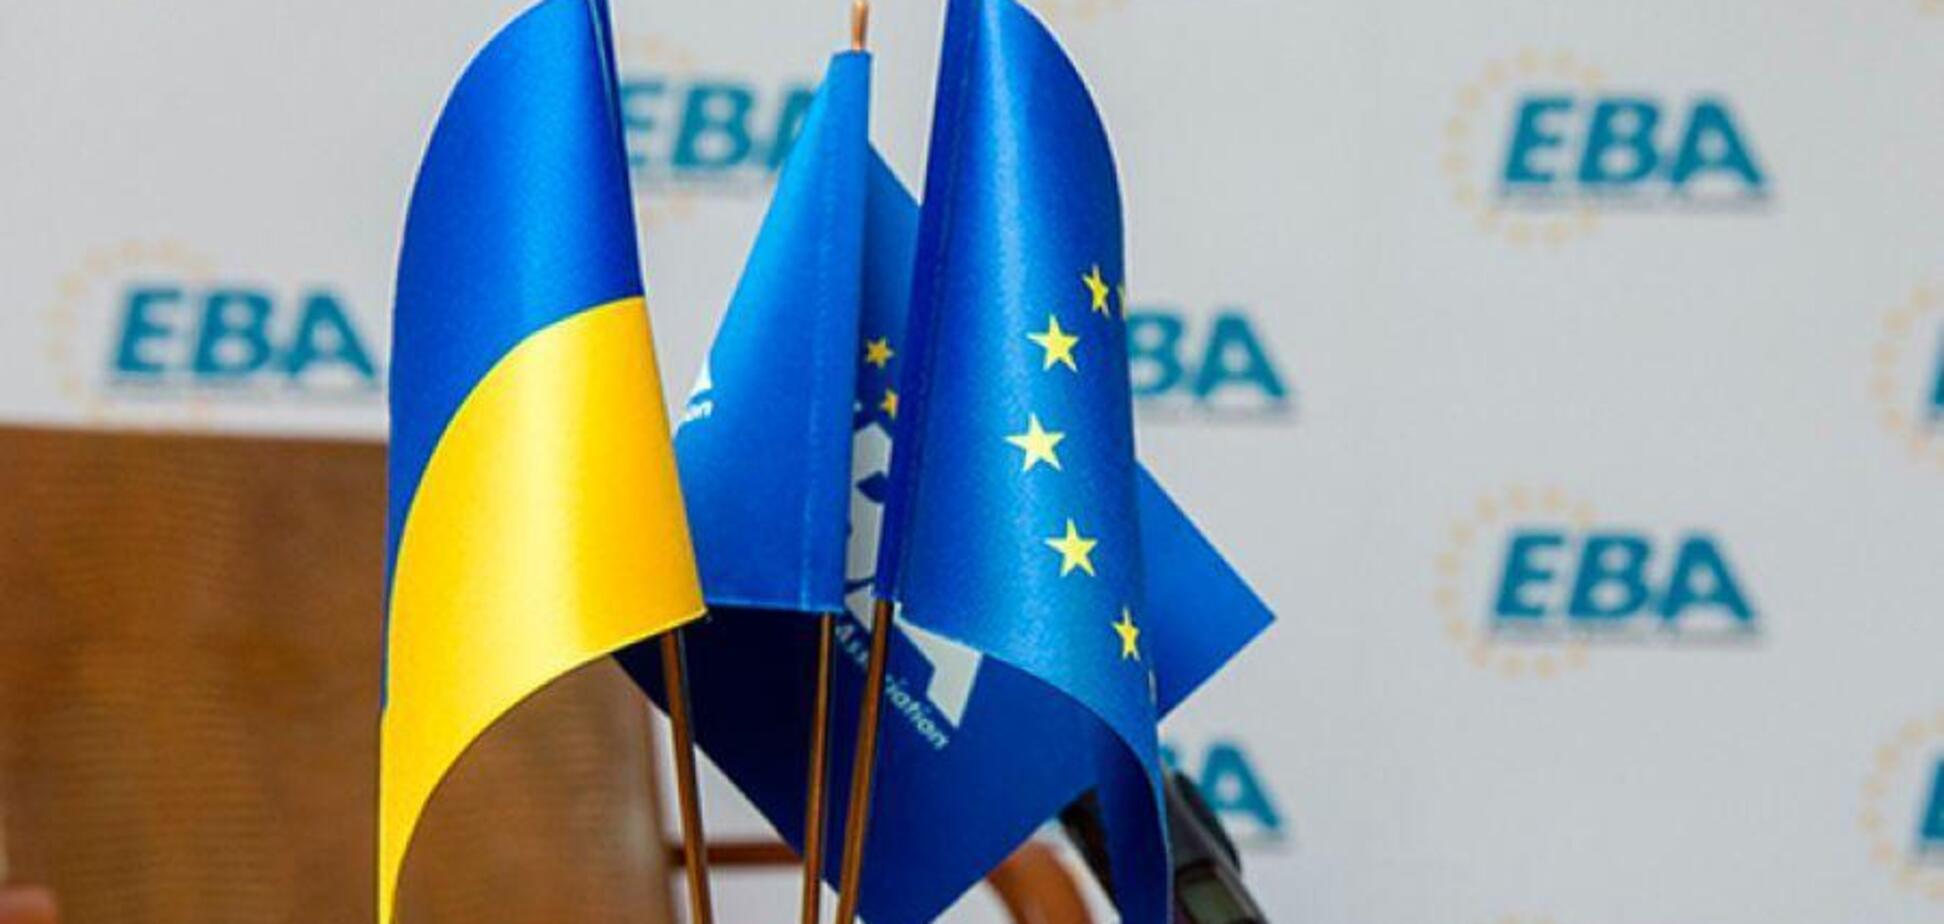 ЄБА попередила Україну про порушення зобов'язань через новий акциз на 'зелену' енергію